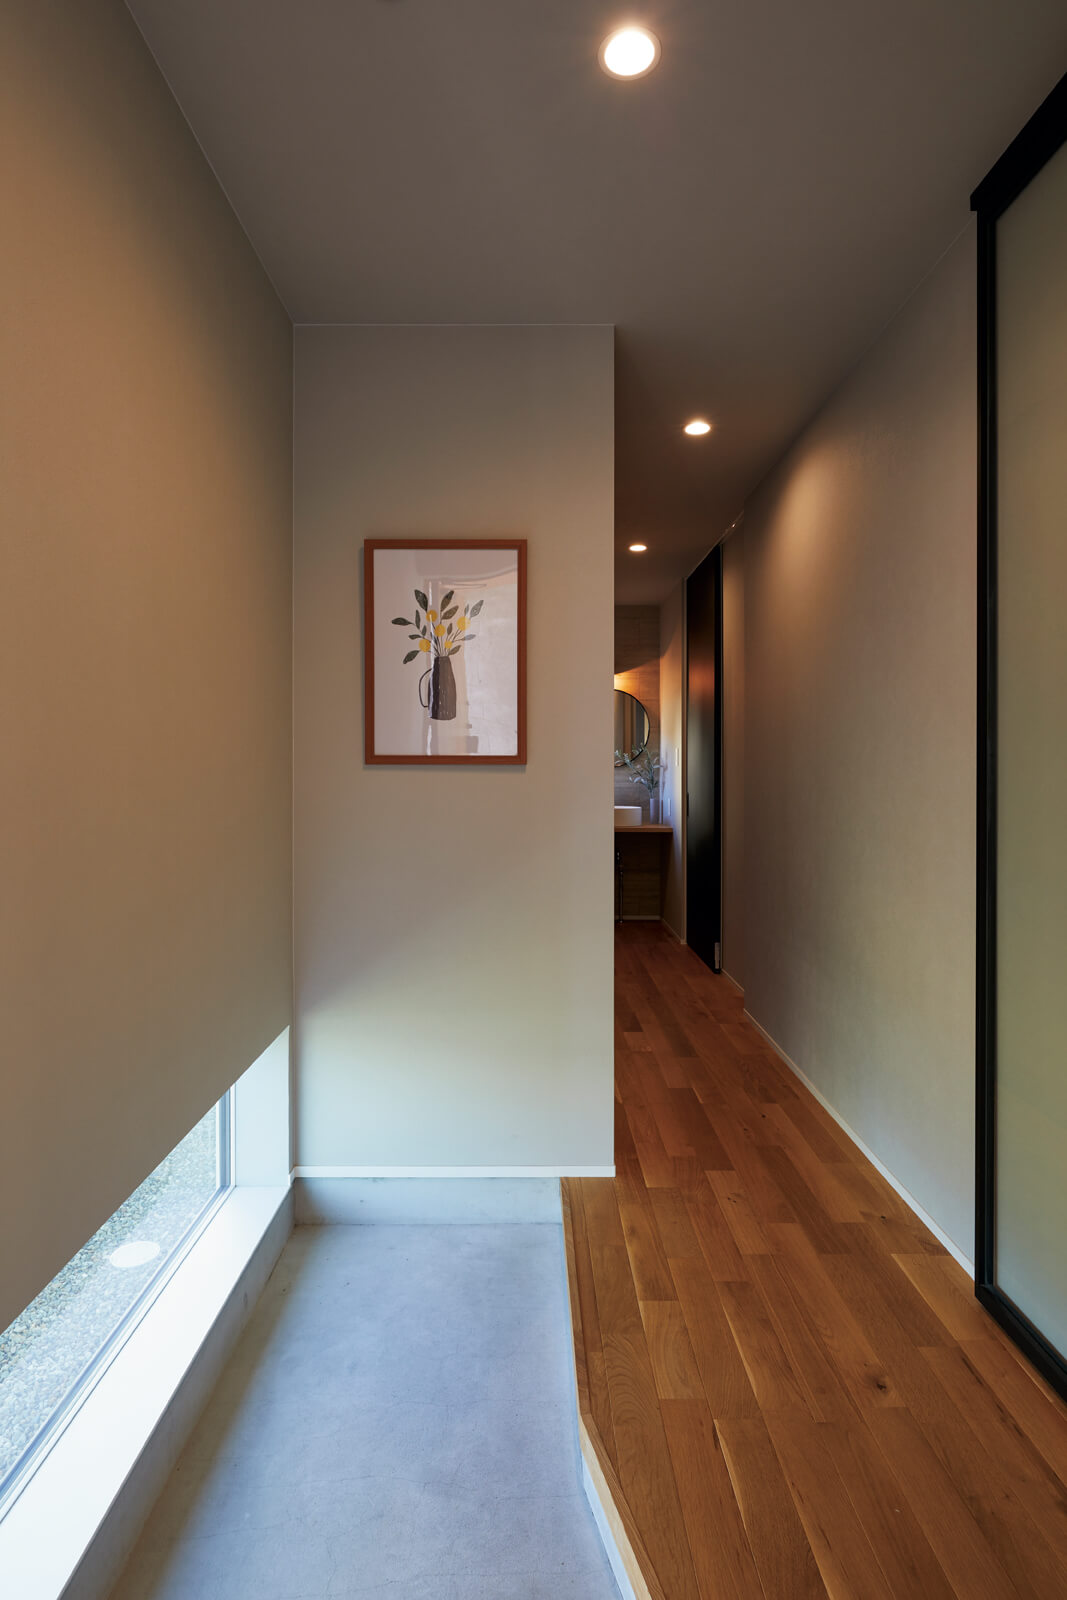 玄関ホールは地窓で採光を確保。リビングへの表動線と廊下を介してキッチンに通じる裏動線が設計されている